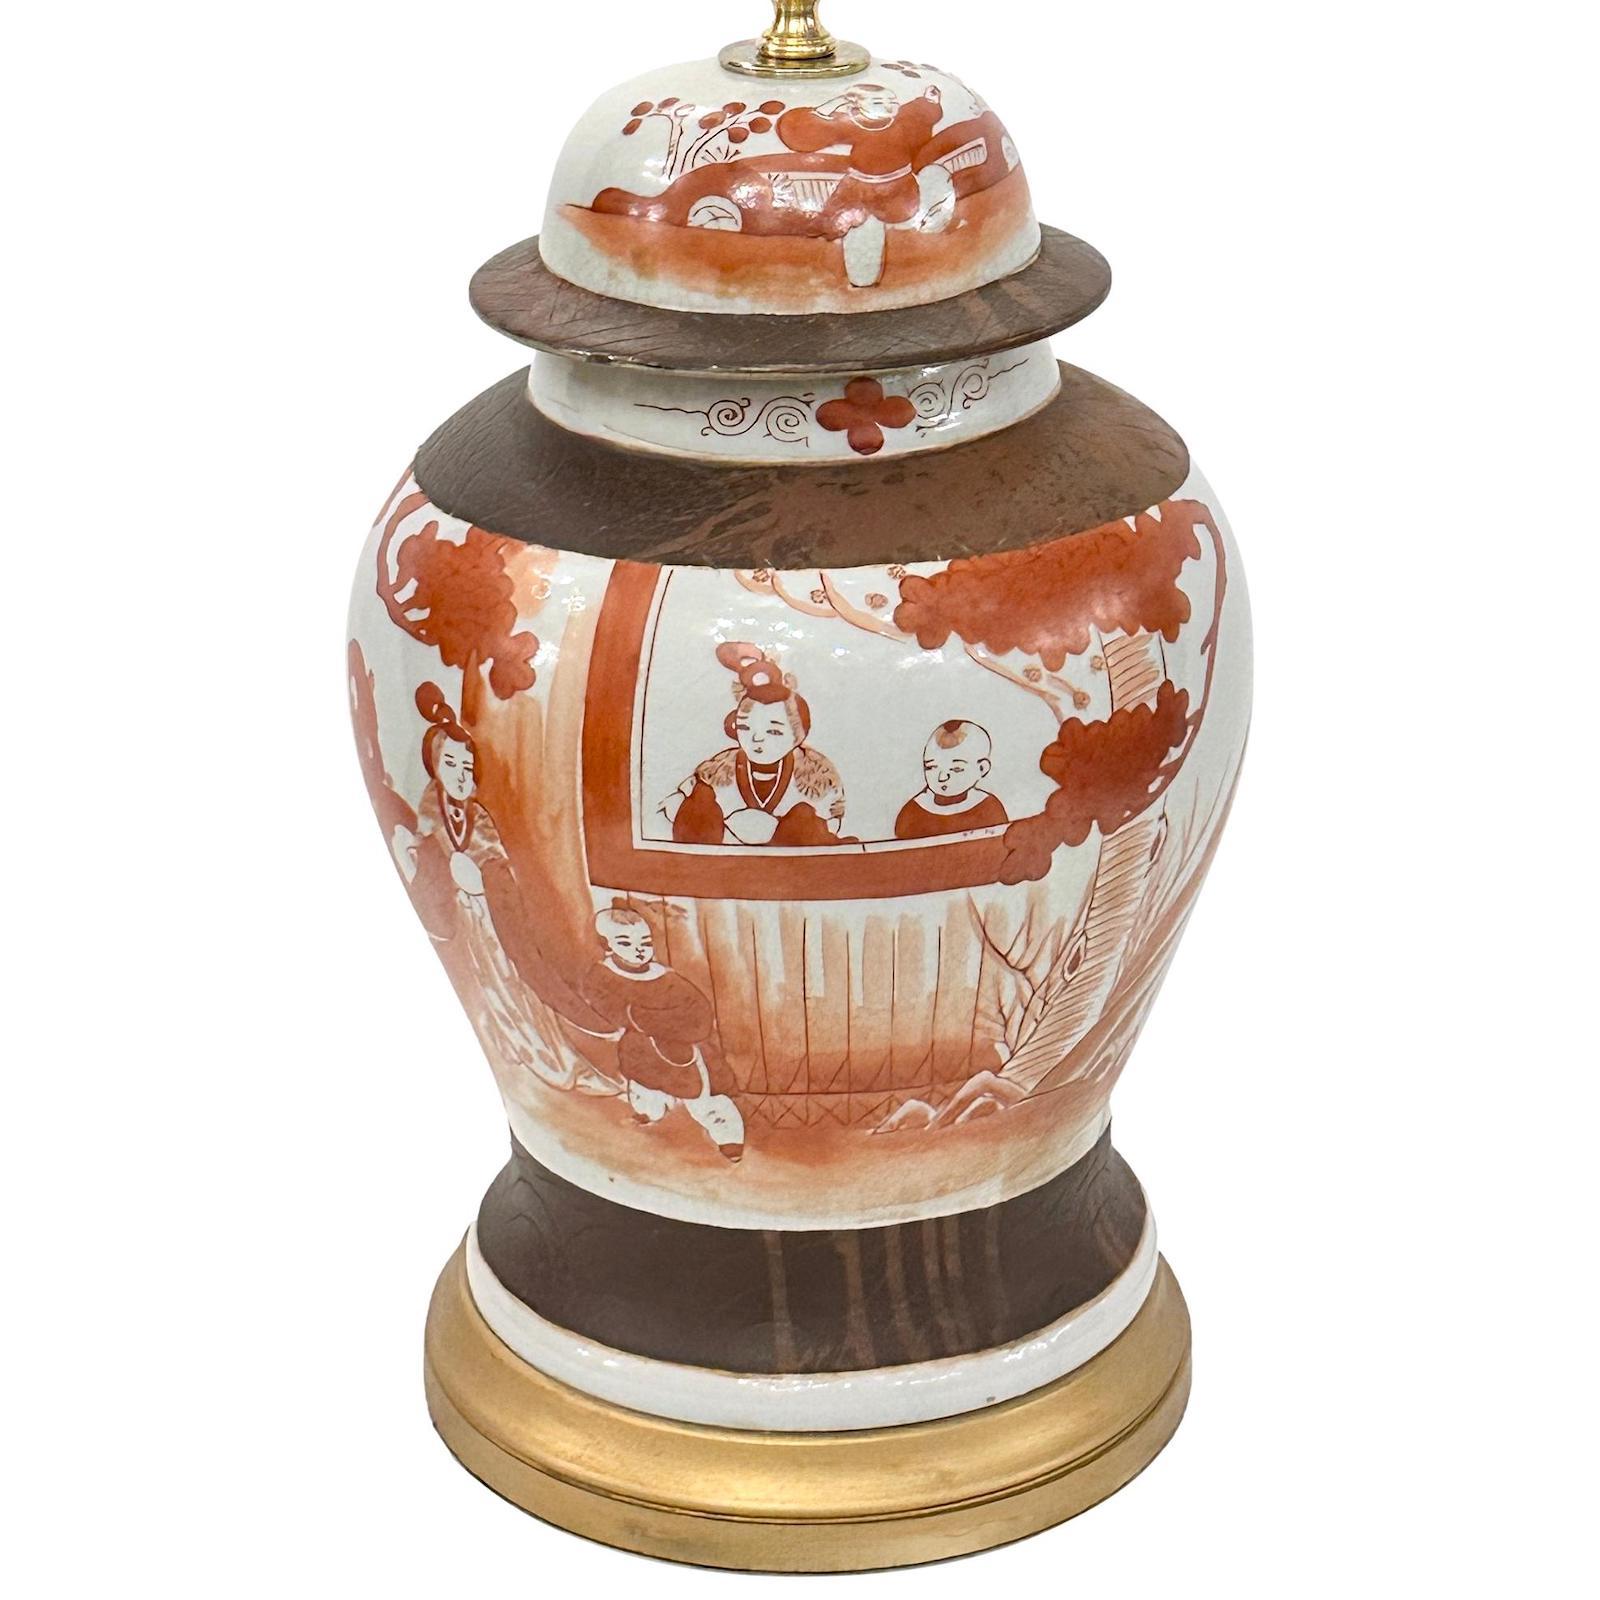 Paire de lampes de table en porcelaine chinoise des années 1920 avec des scènes de cour.

Mesures :
Hauteur du corps : 16